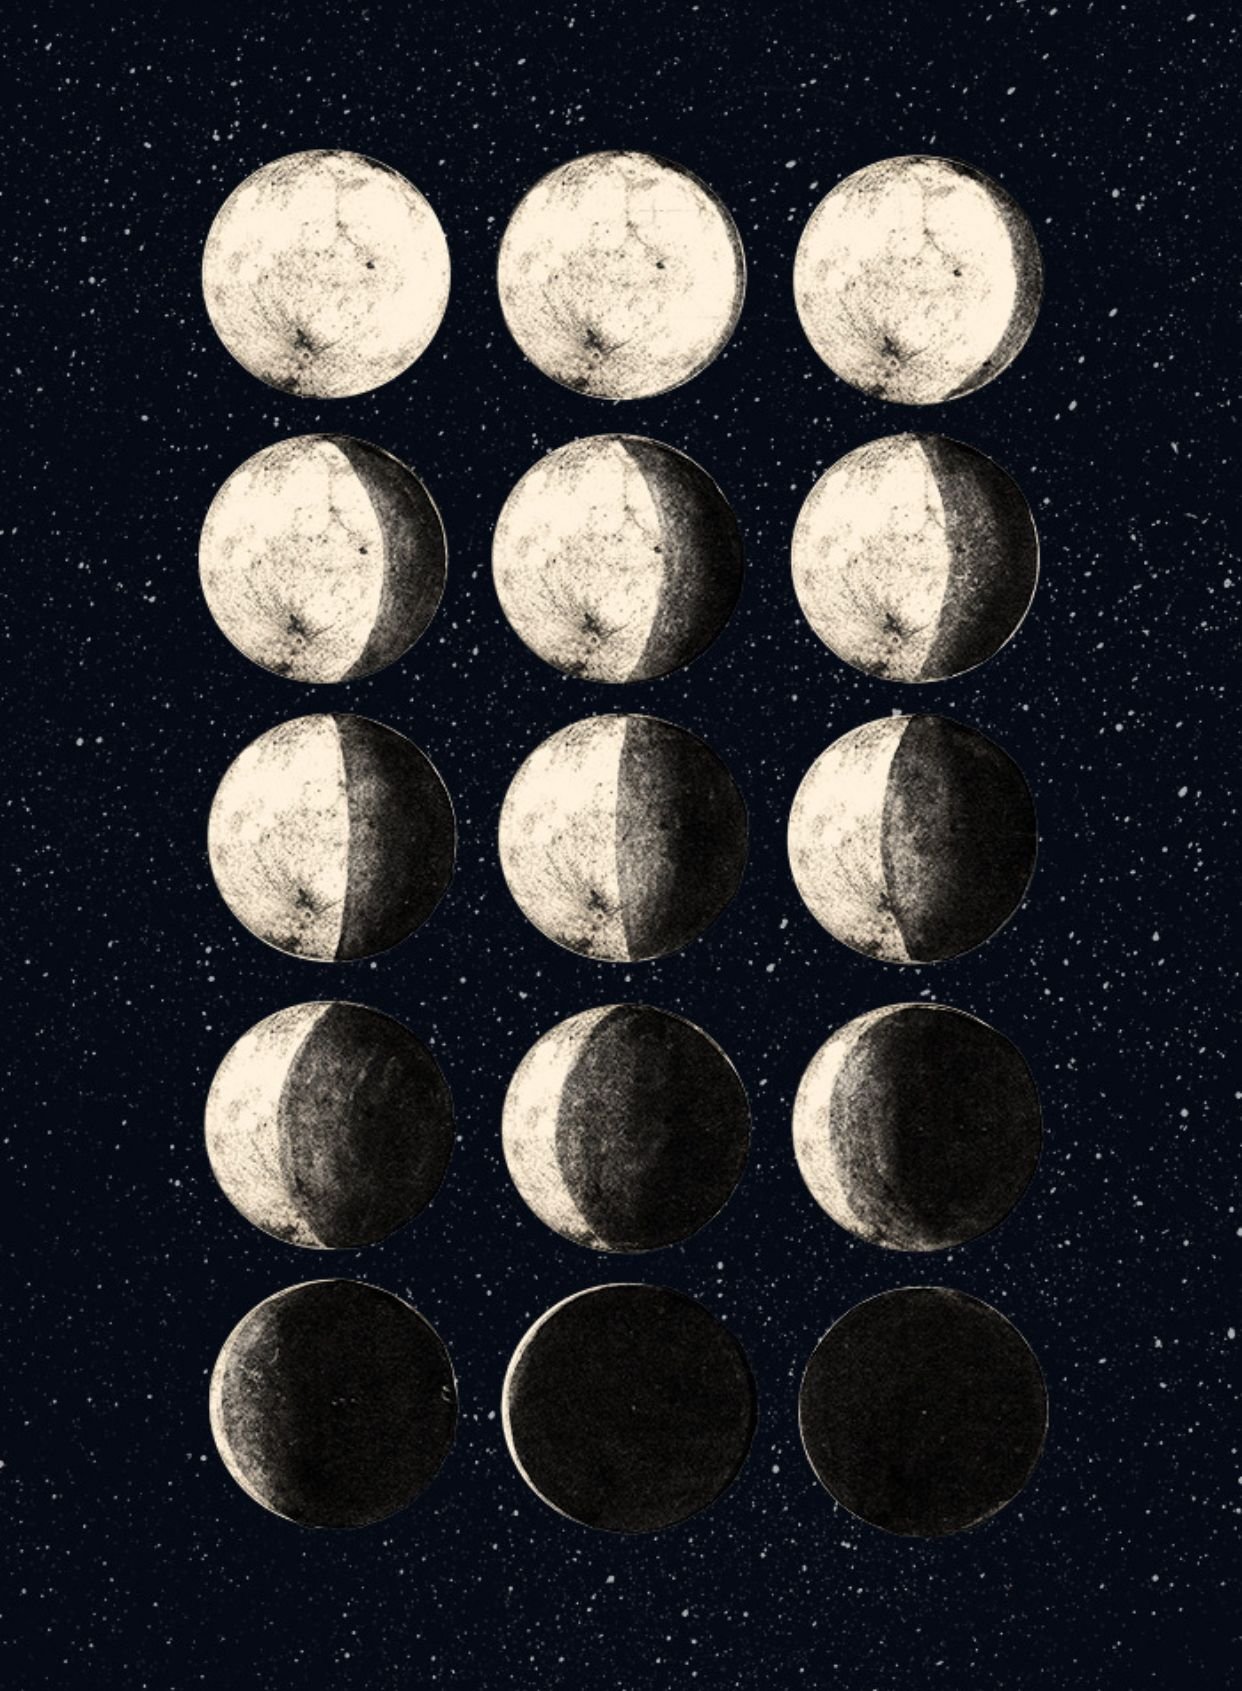 Луна царского. Фазы Луны. Цикл Луны арт. Ф̆̈ӑ̈з̆̈ы̆̈ Л̆̈ў̈н̆̈ы̆̈. Луна в разных фазах.